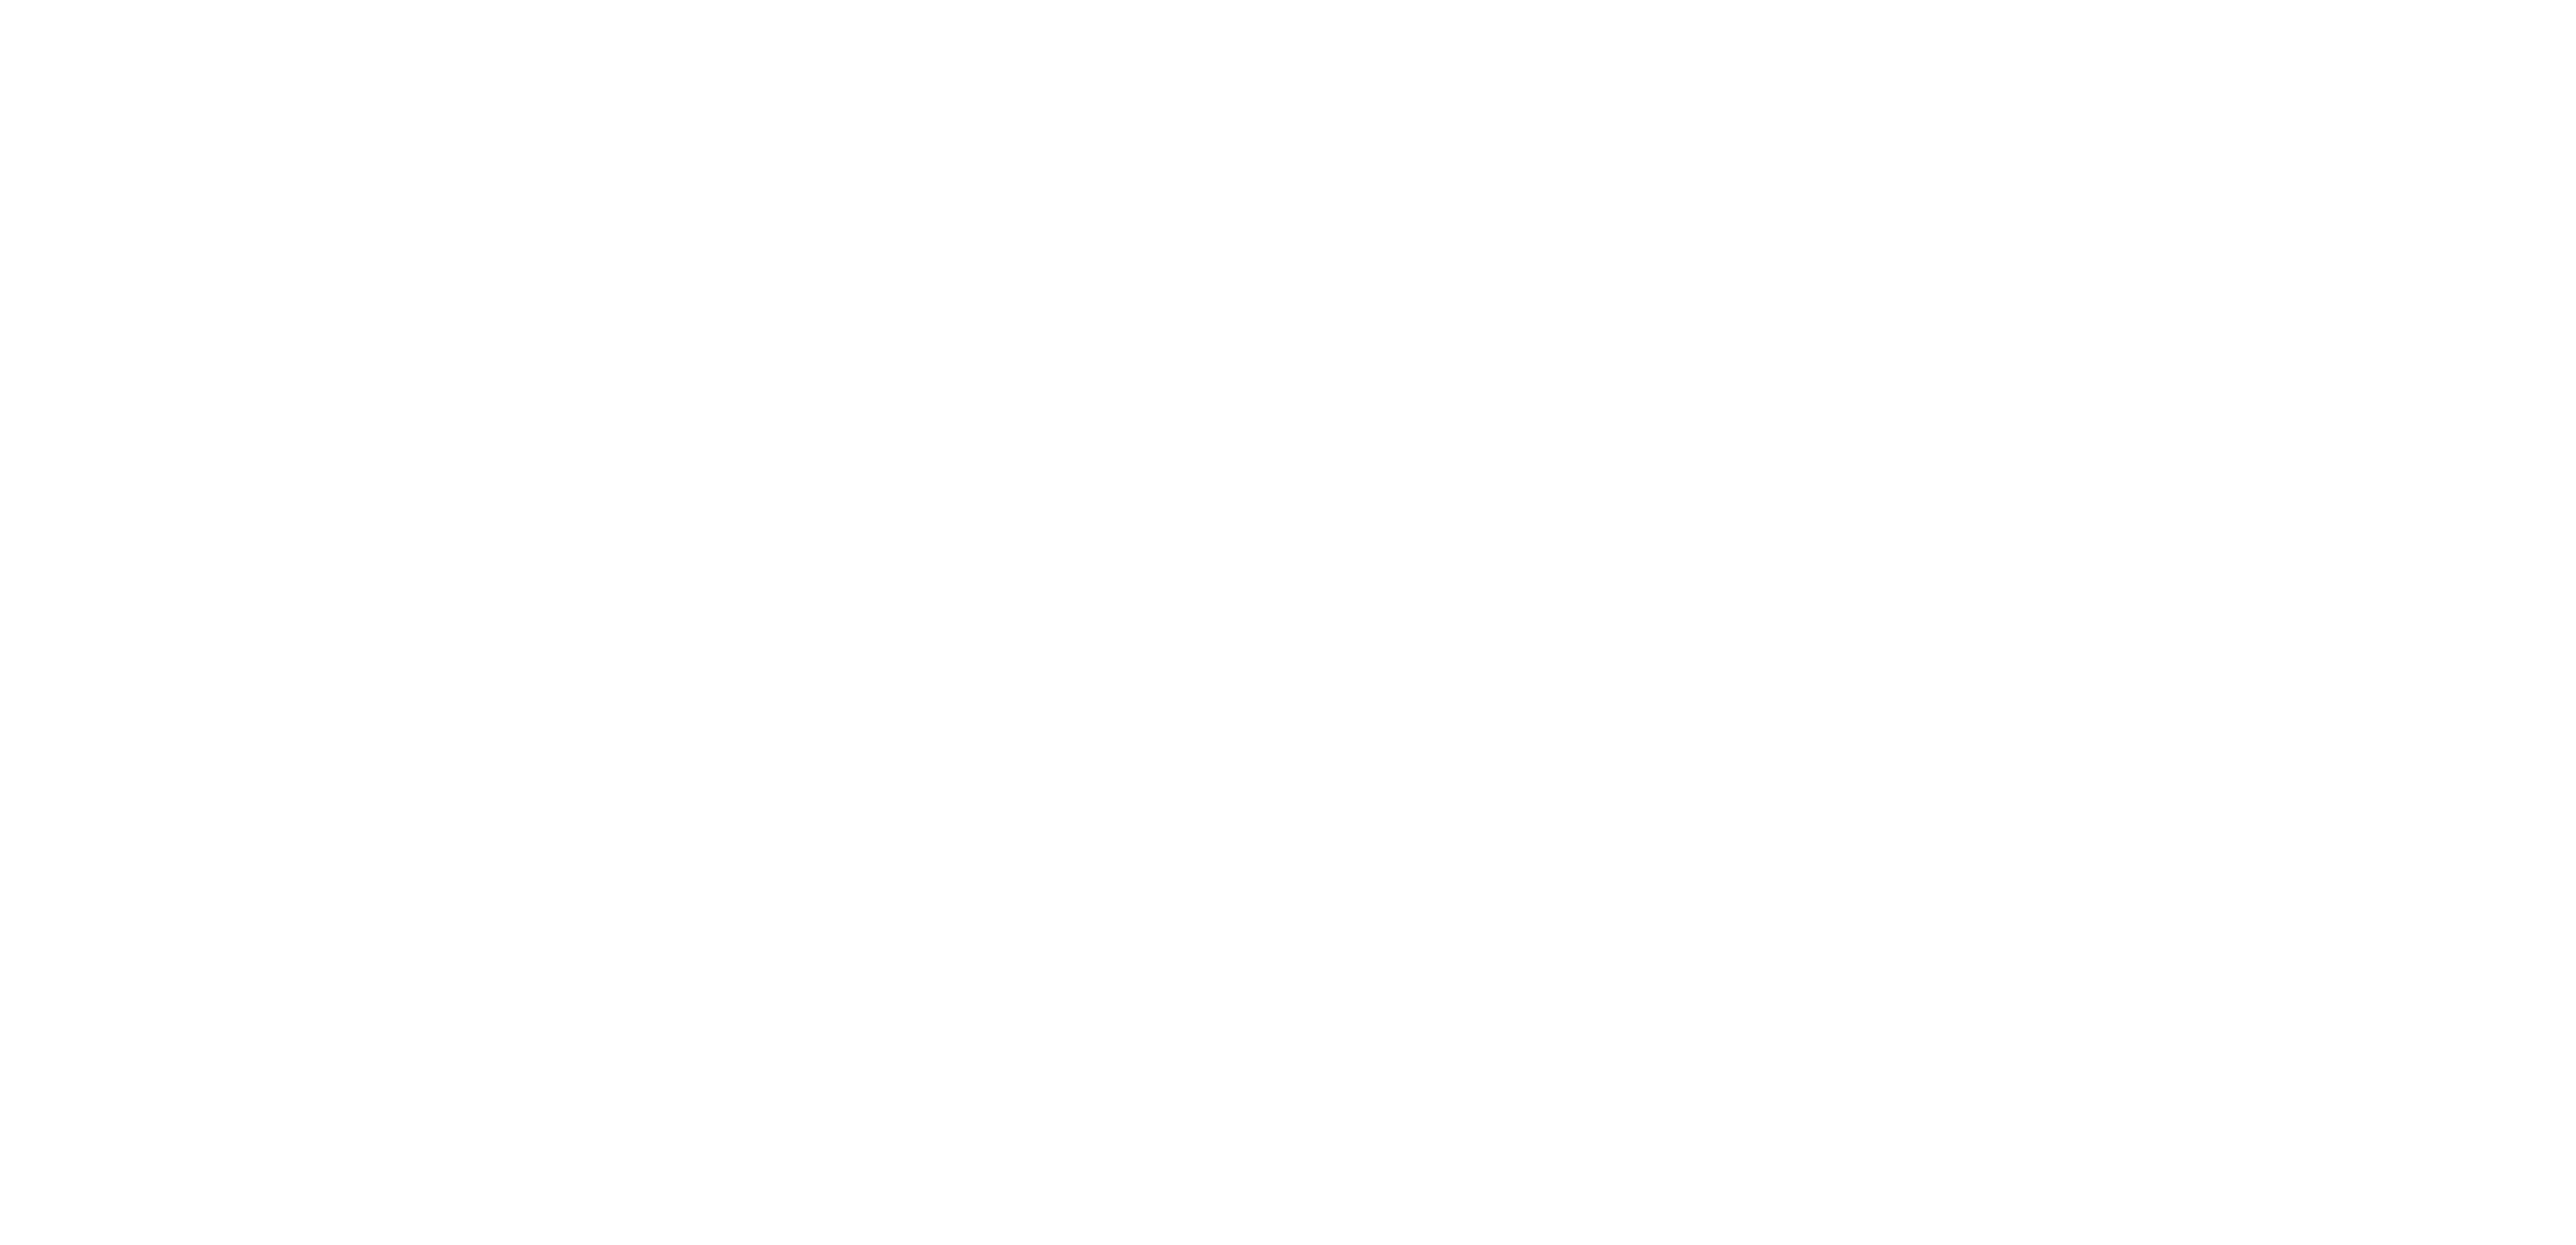 FAEX Concept Store